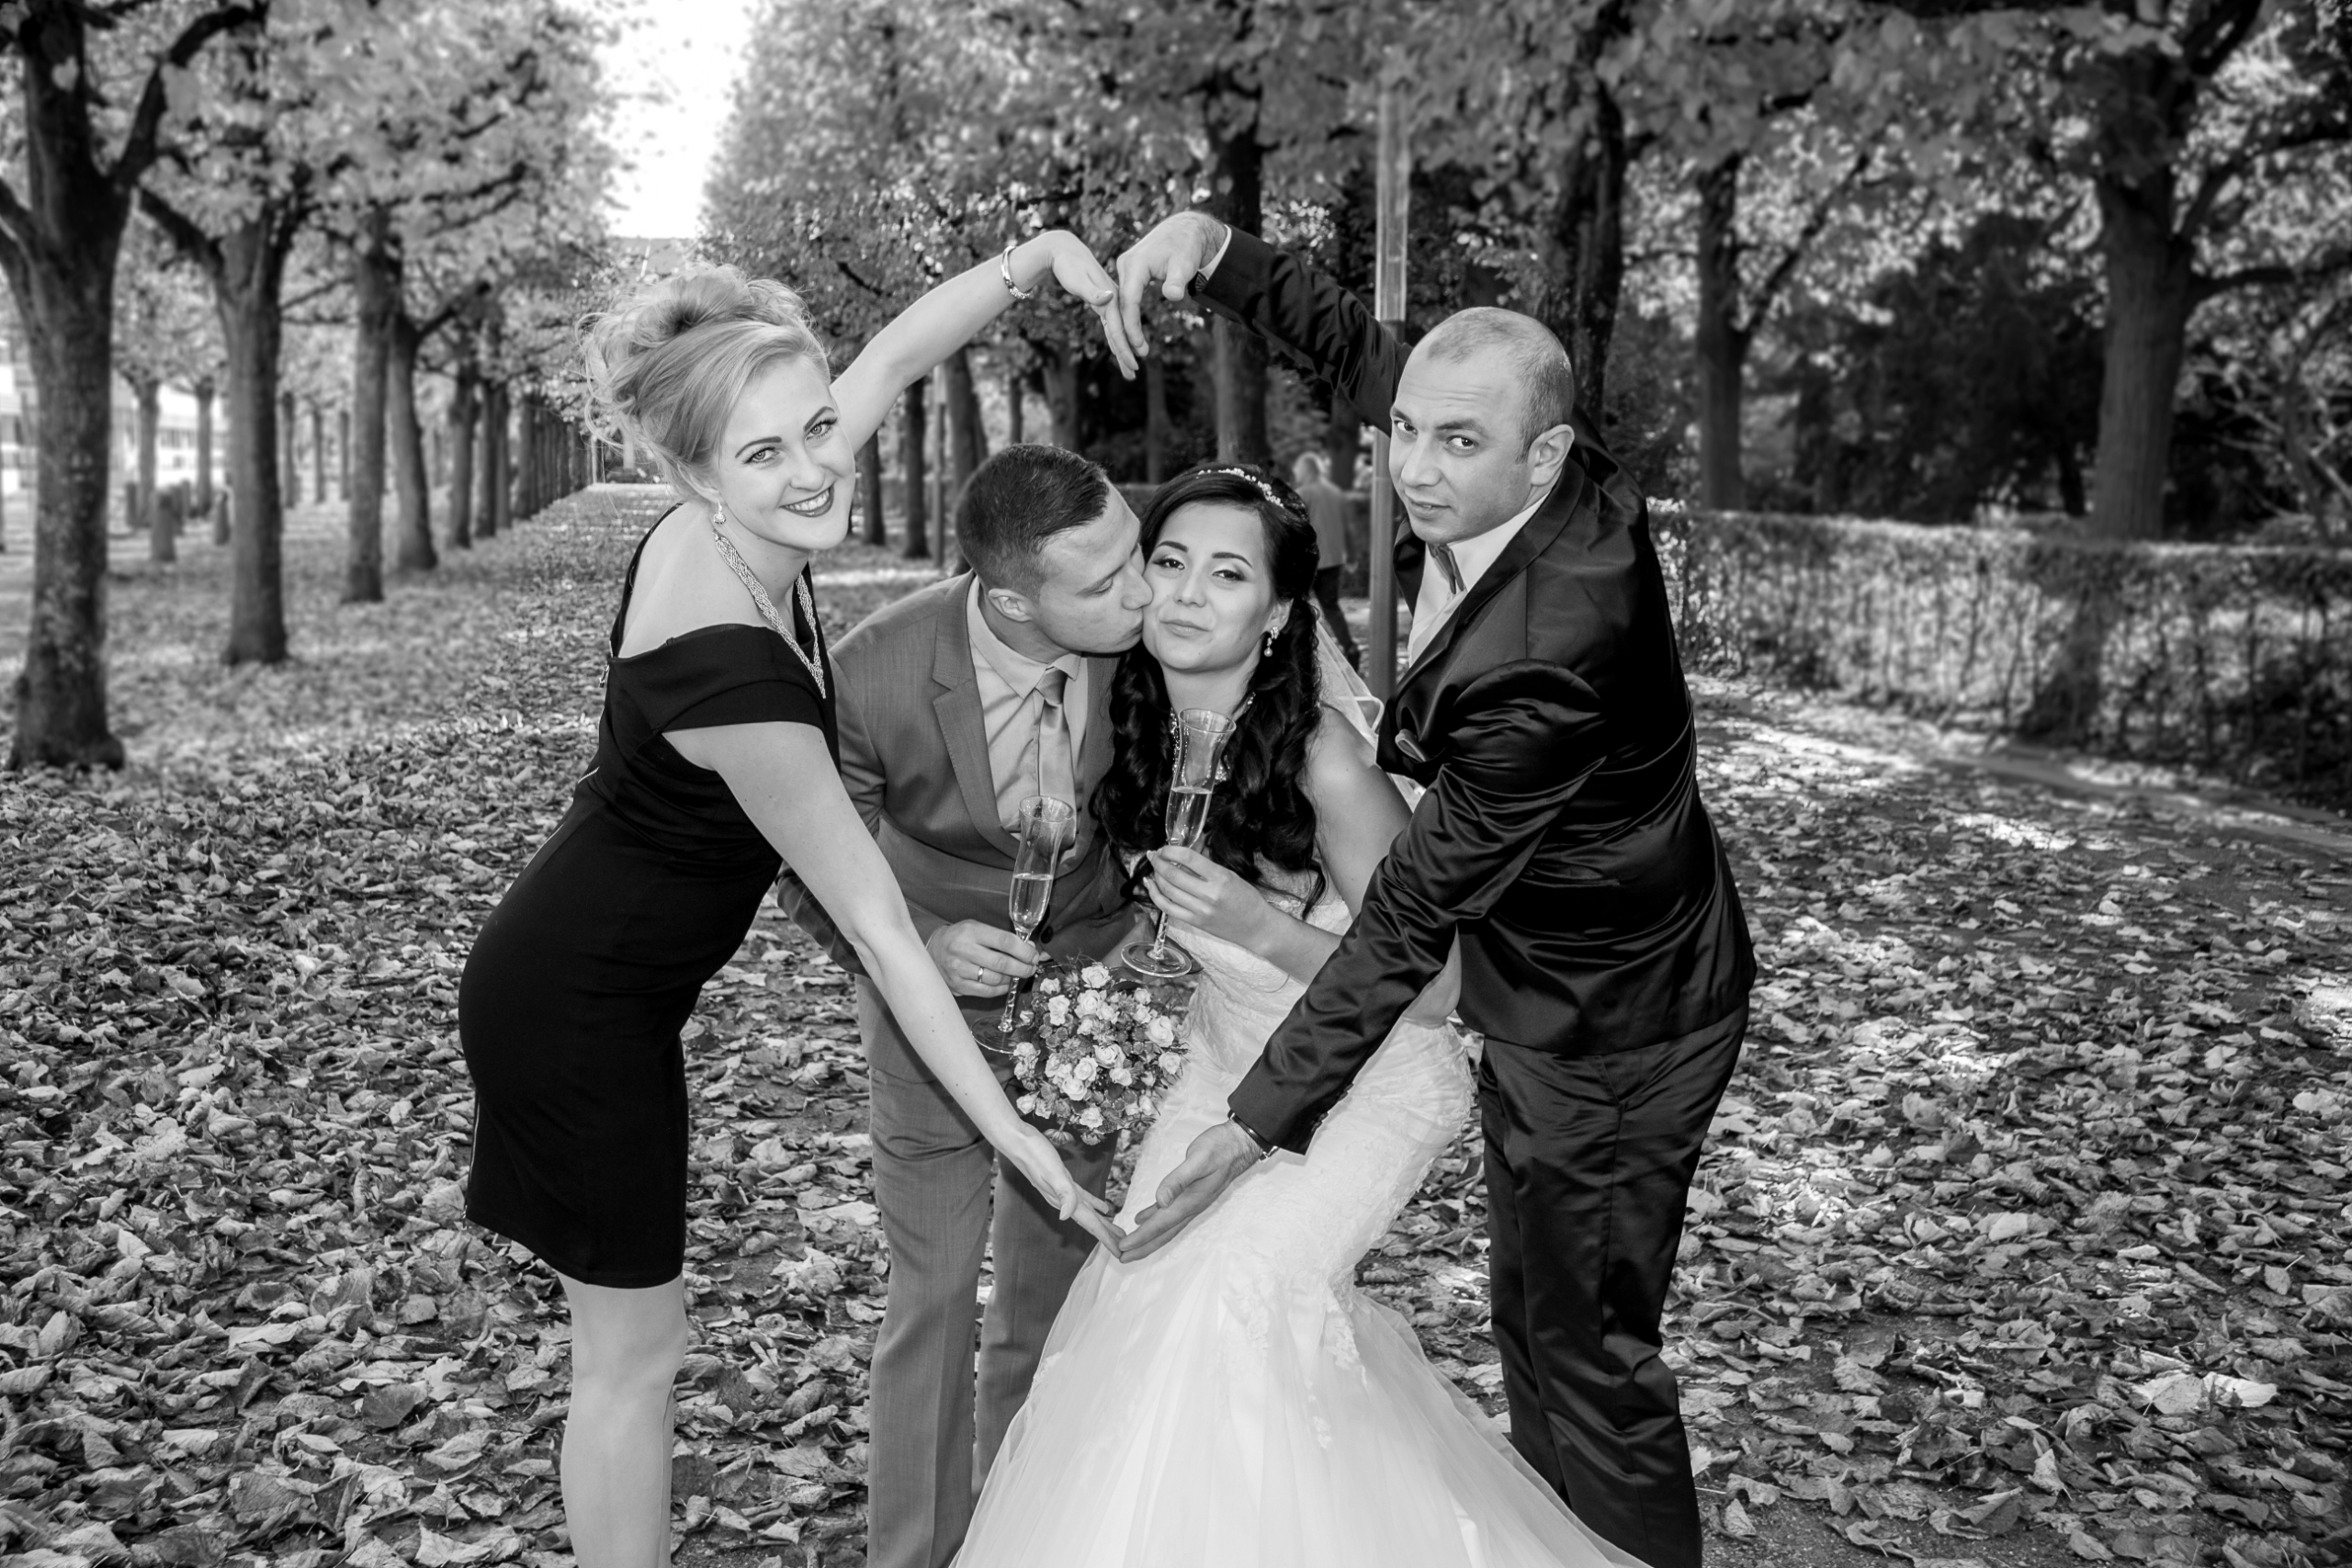 Hochzeitsfotograf Enzkreis erstellt Hochzeitsreportagen, bietet Paarshootings &amp;amp; Videos im modernen, kreativen und echten Stil an